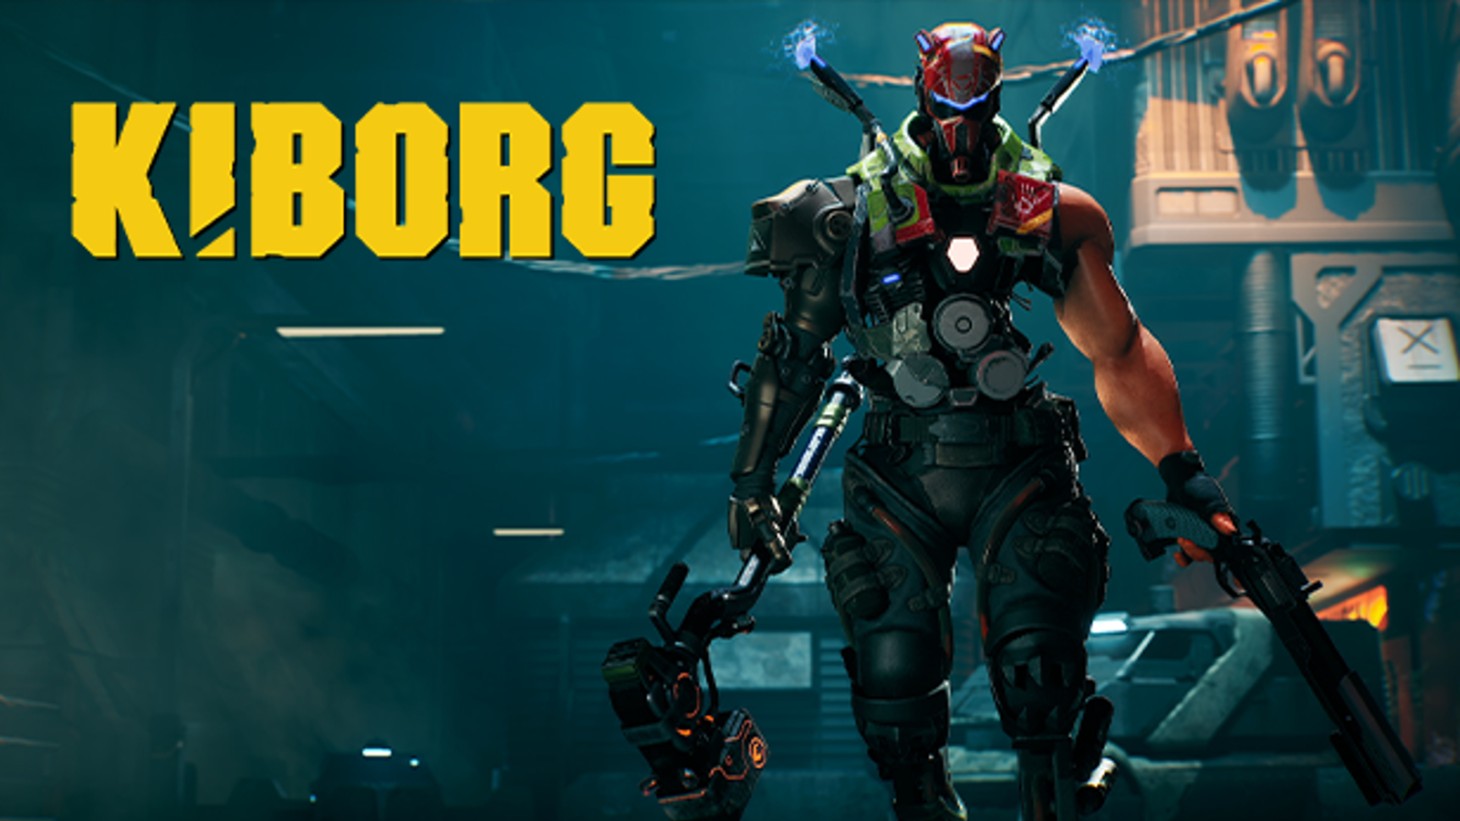 Kiborg: Arena ist ein Action-Roguelite, das aussieht wie Cyberpunk Sifu